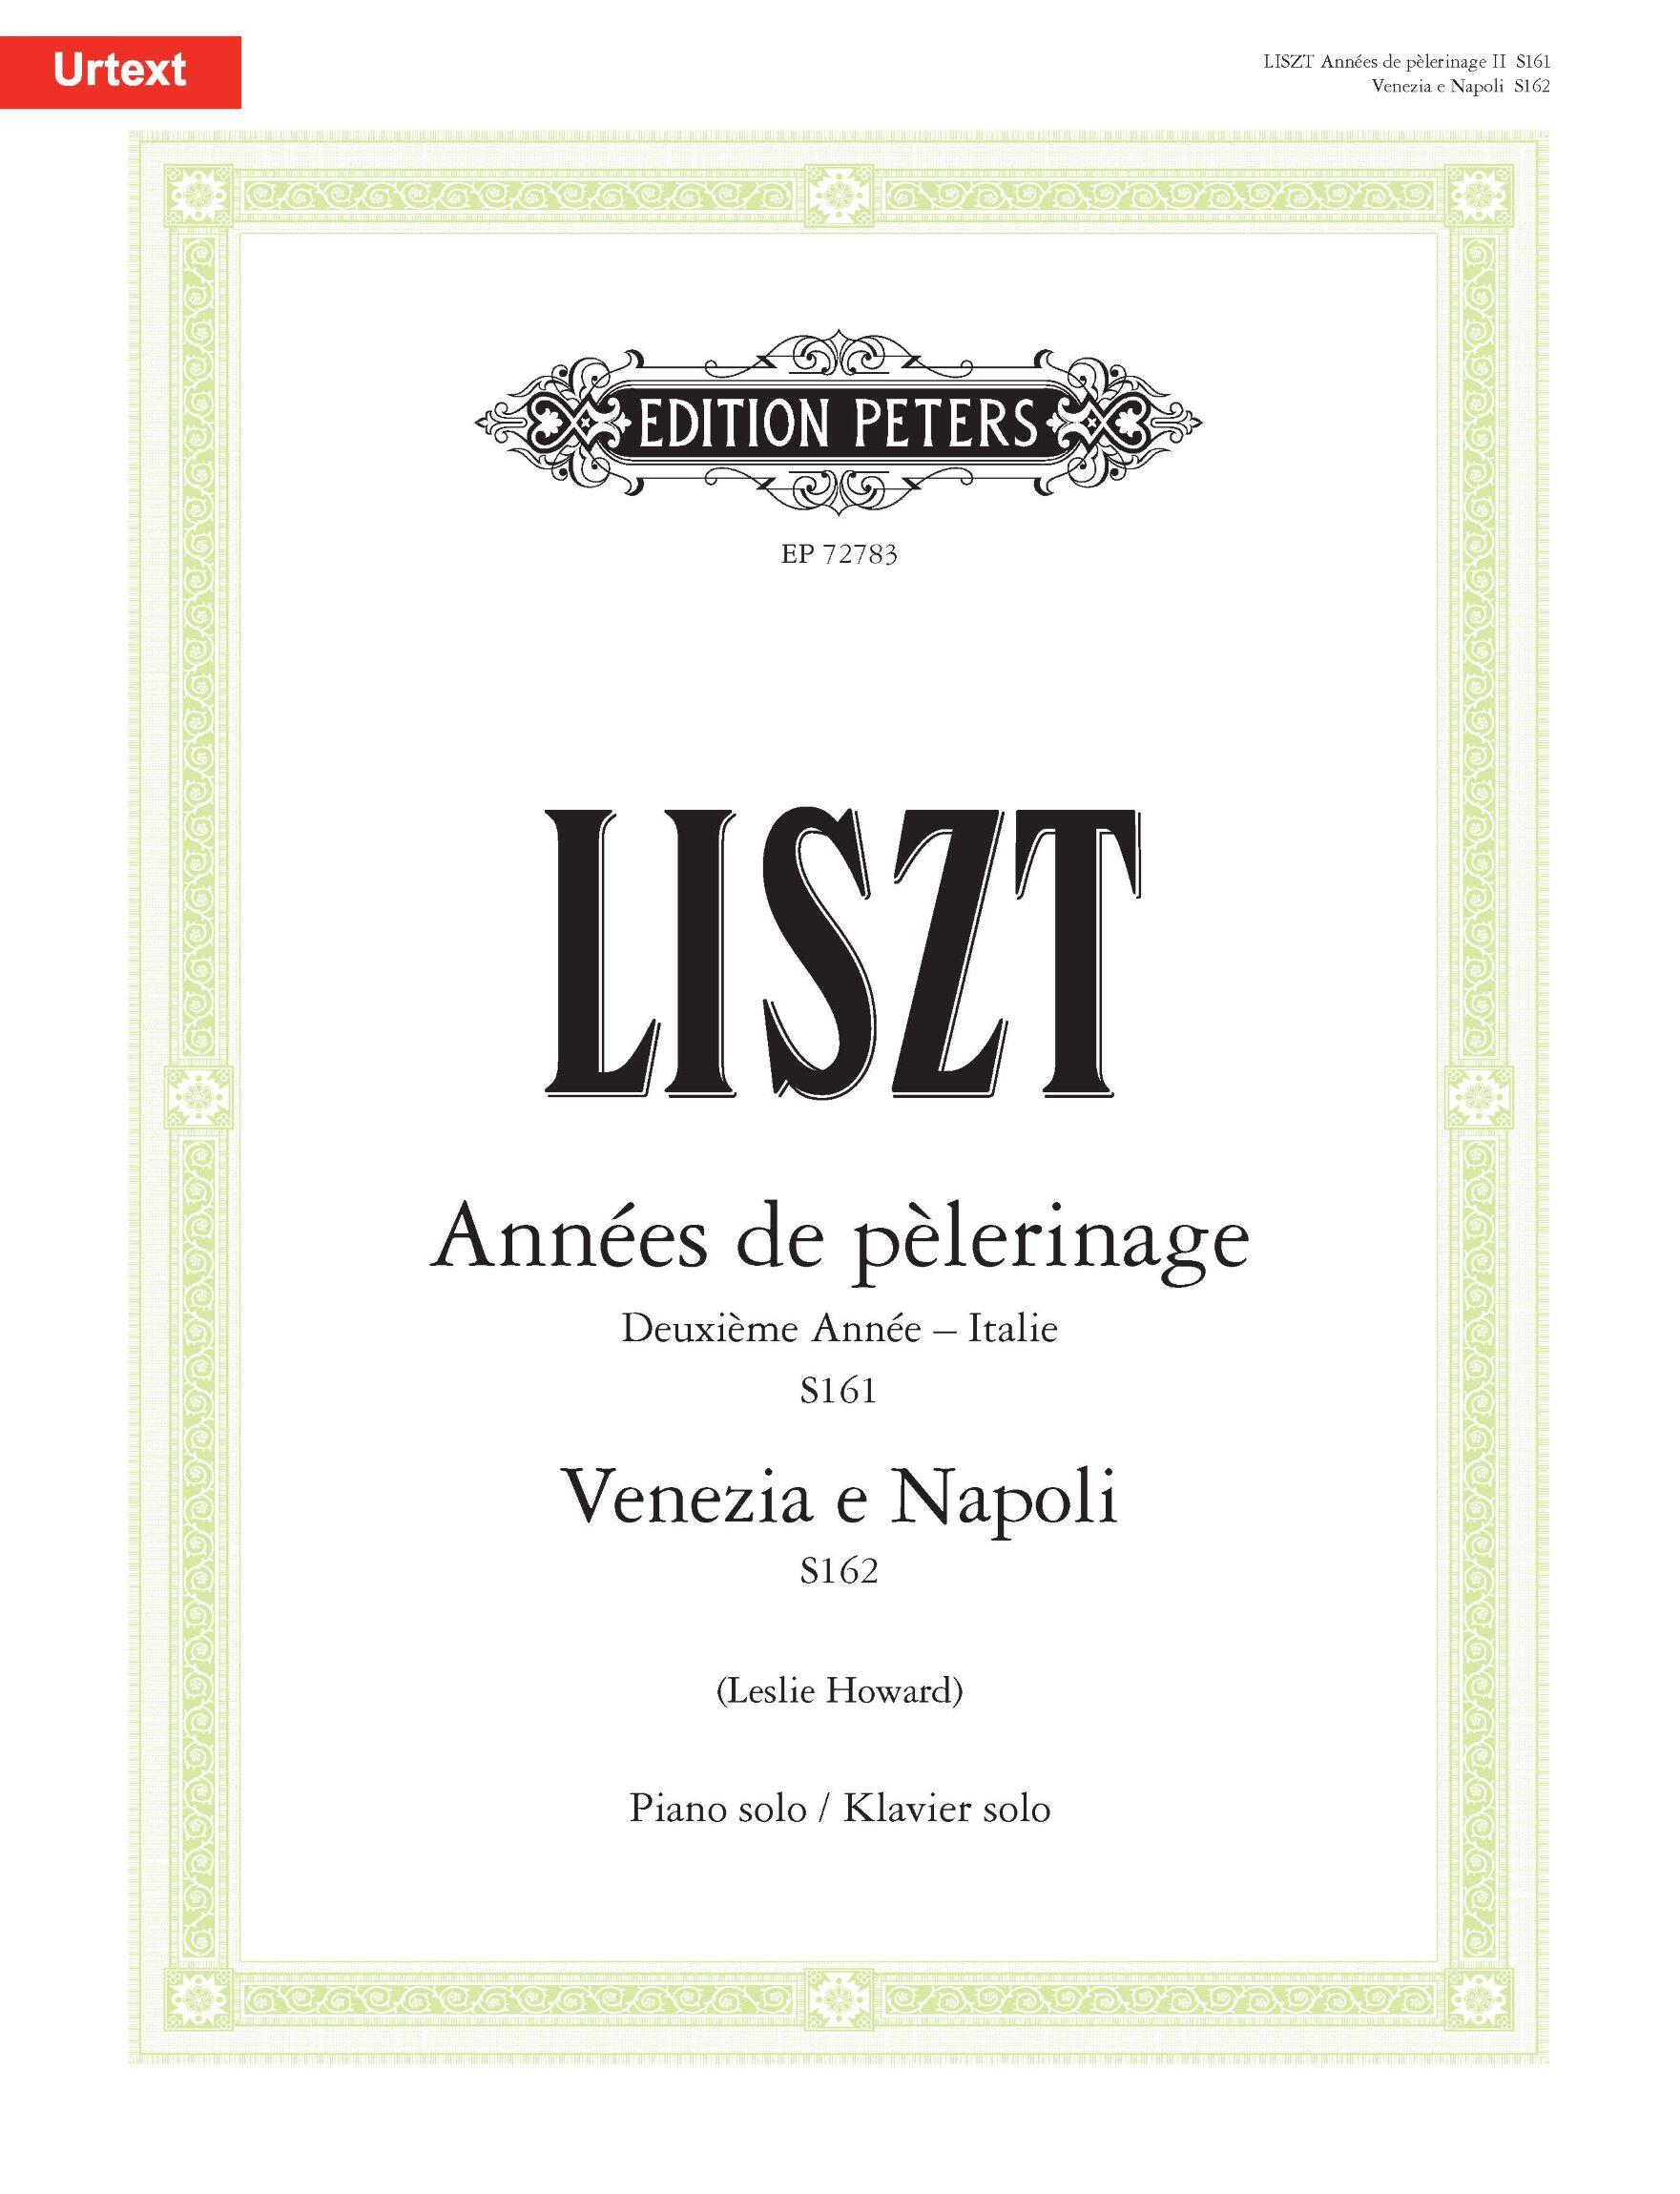 Liszt: Années de pèlerinage Deuxième année - Italie (S161) / Venezia e Napoli (S162) : photo 1